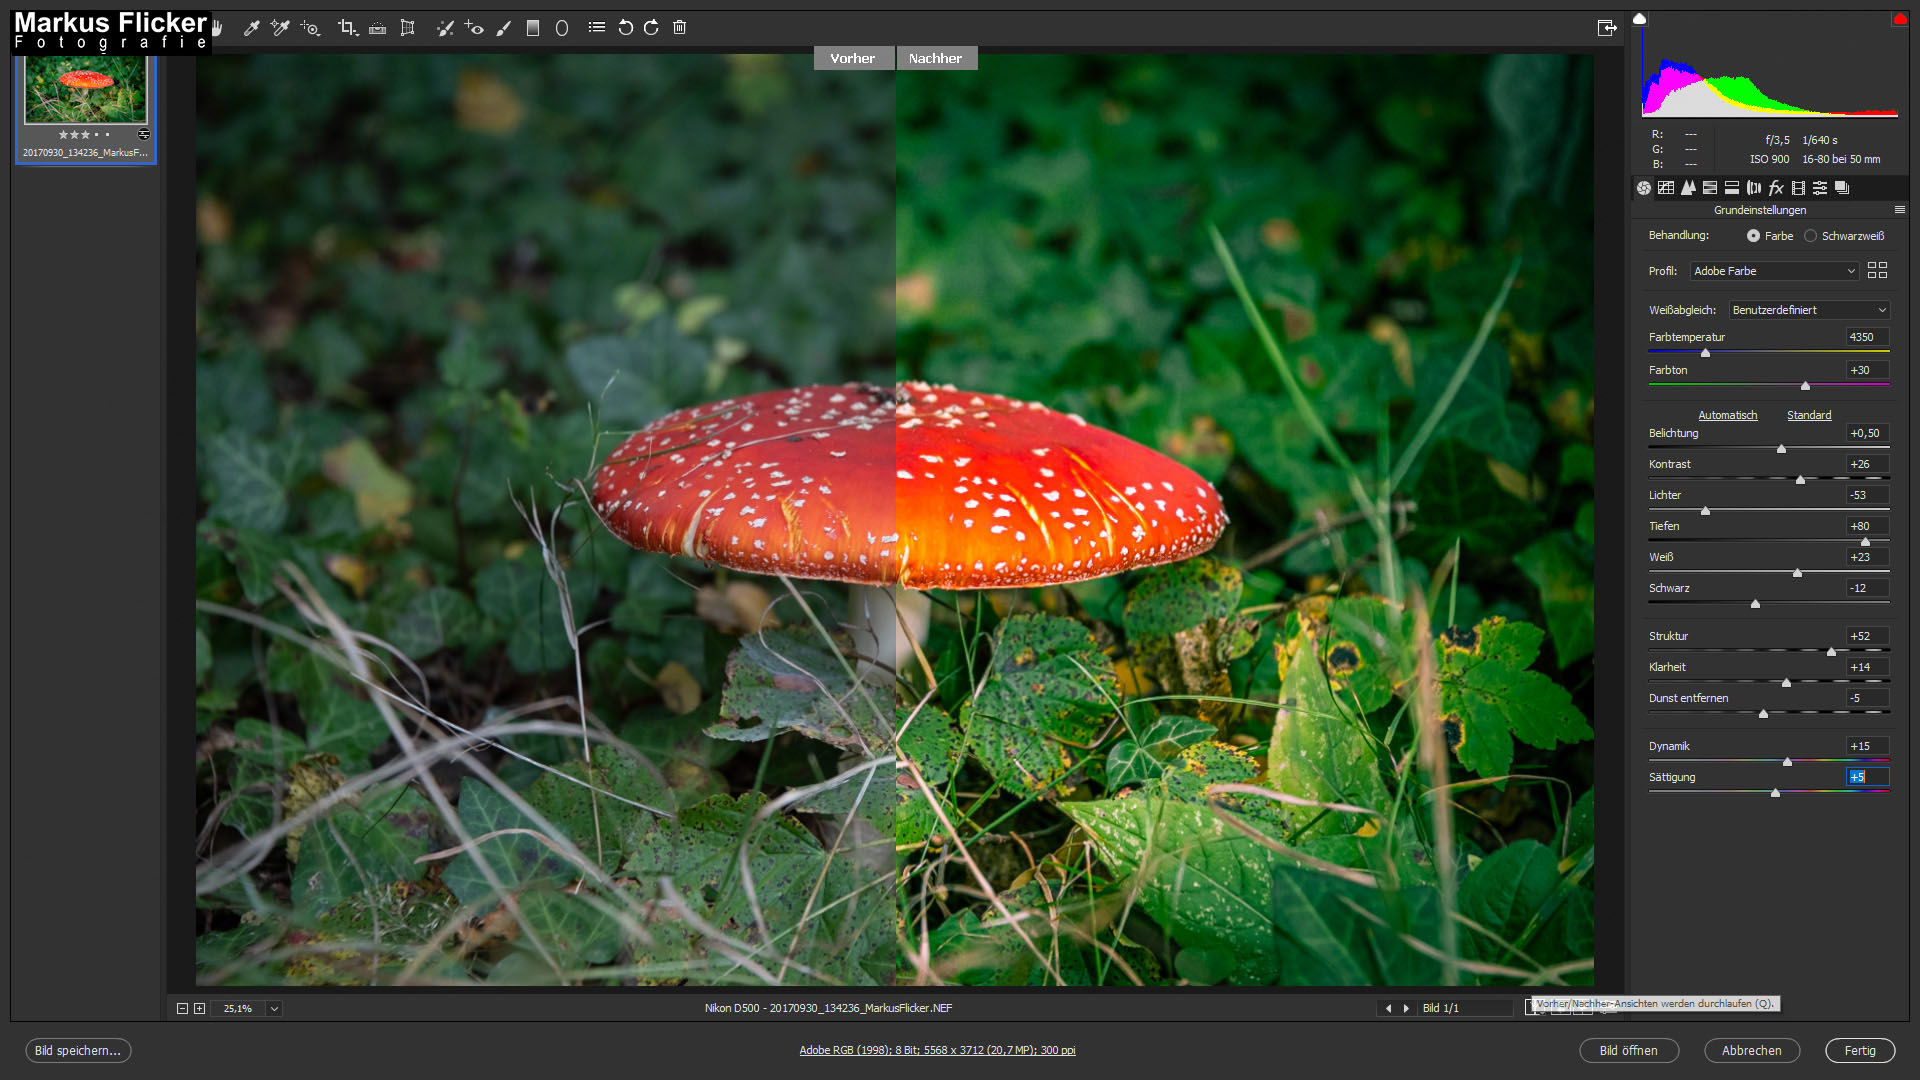 Der Fliegenpilz (Amanita muscaria) Adobe Photoshop Camera RAW Vorher Nacher Bildbearbeitung